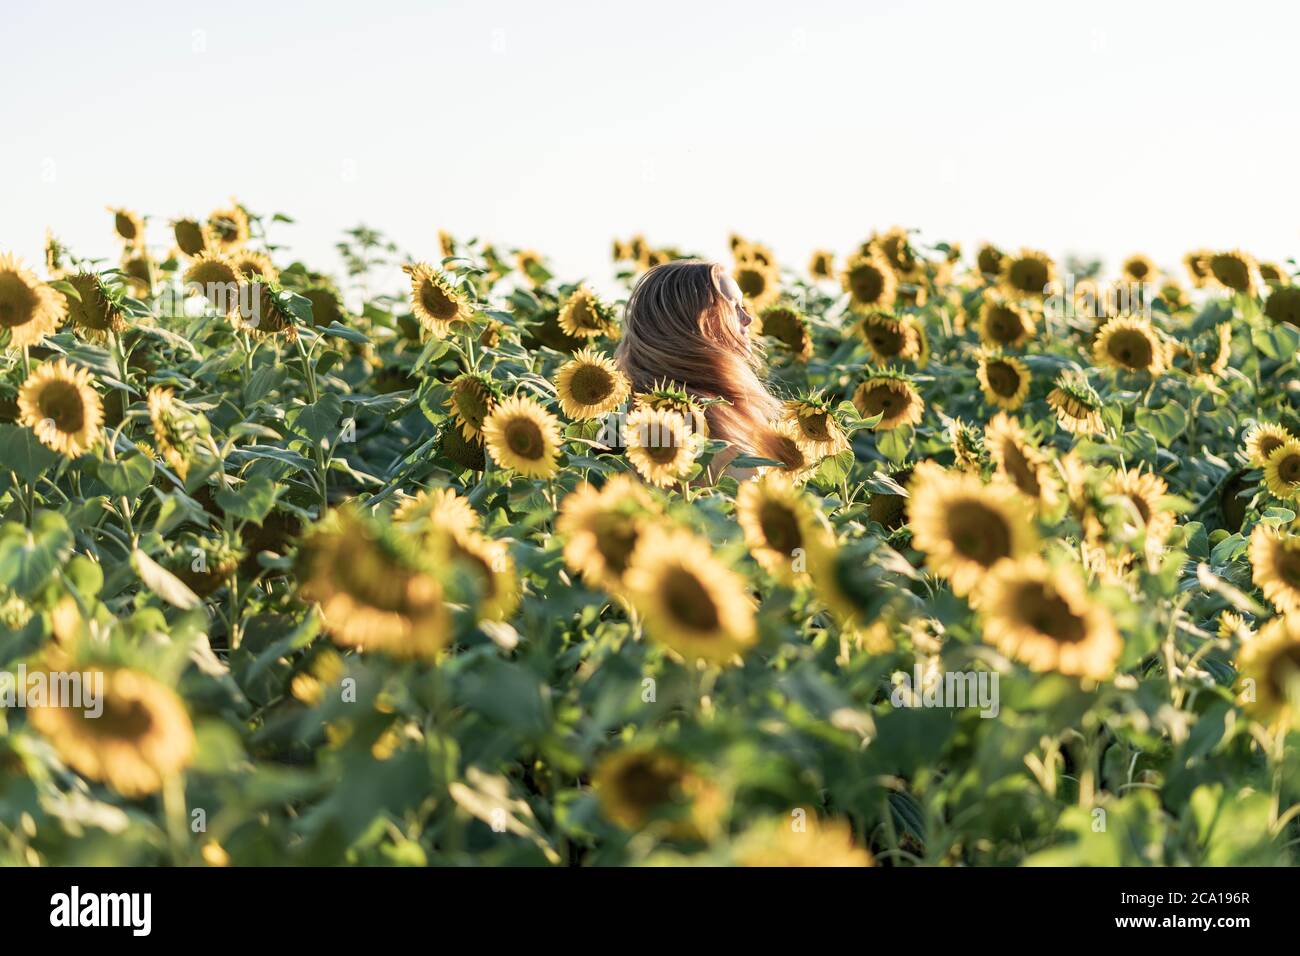 Jeune belle femme souriant et s'amusant dans un champ de tournesol lors d'une belle journée d'été. Banque D'Images